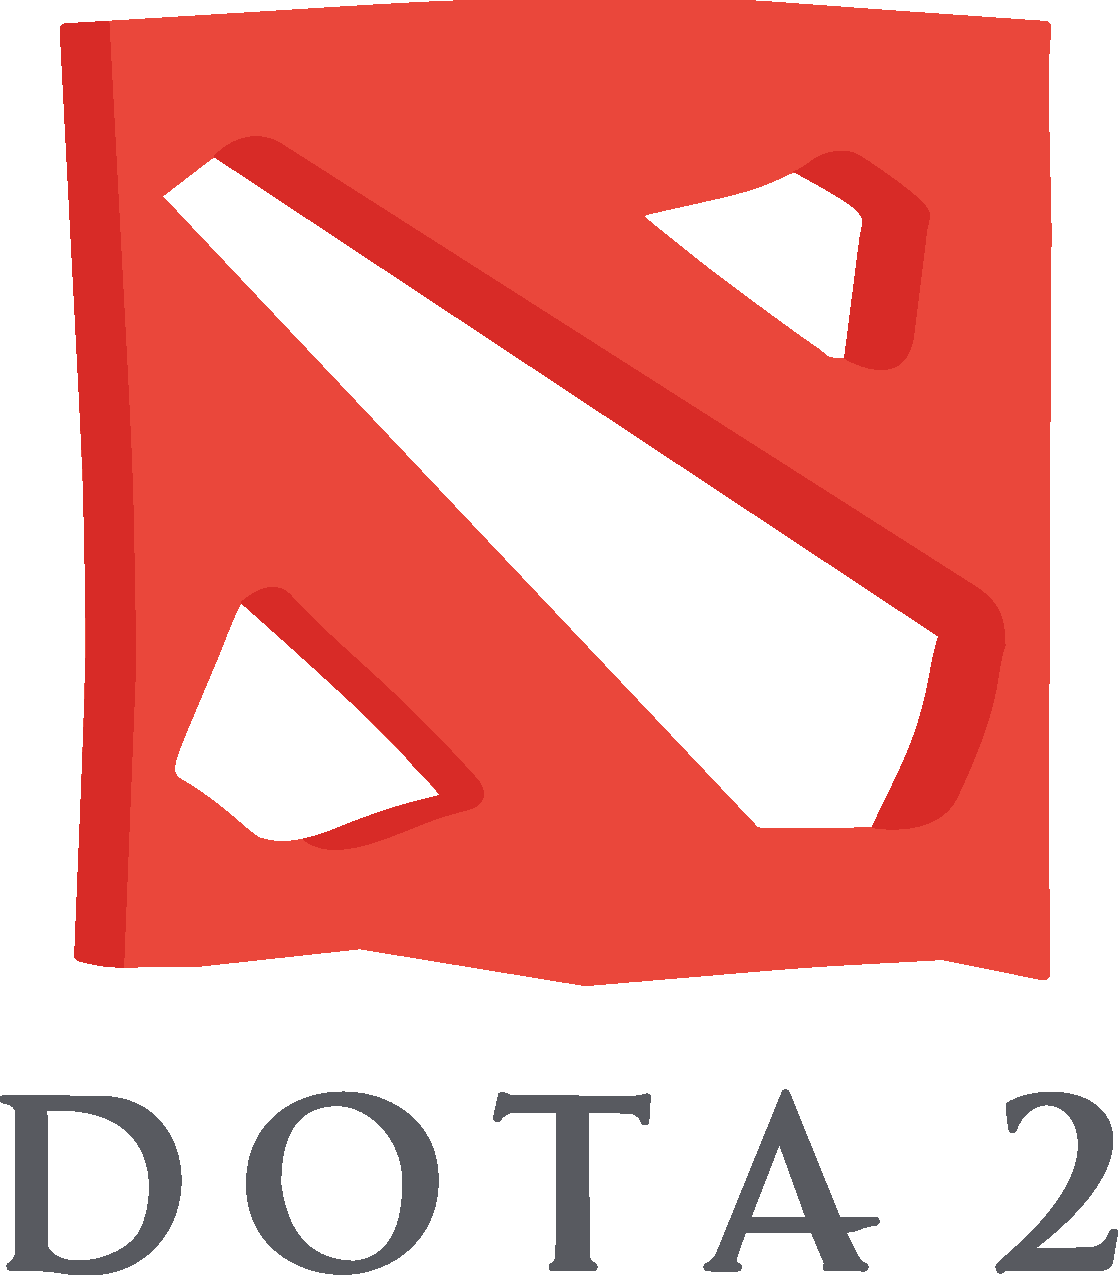 Dota 2 Logo [dota2.com] png